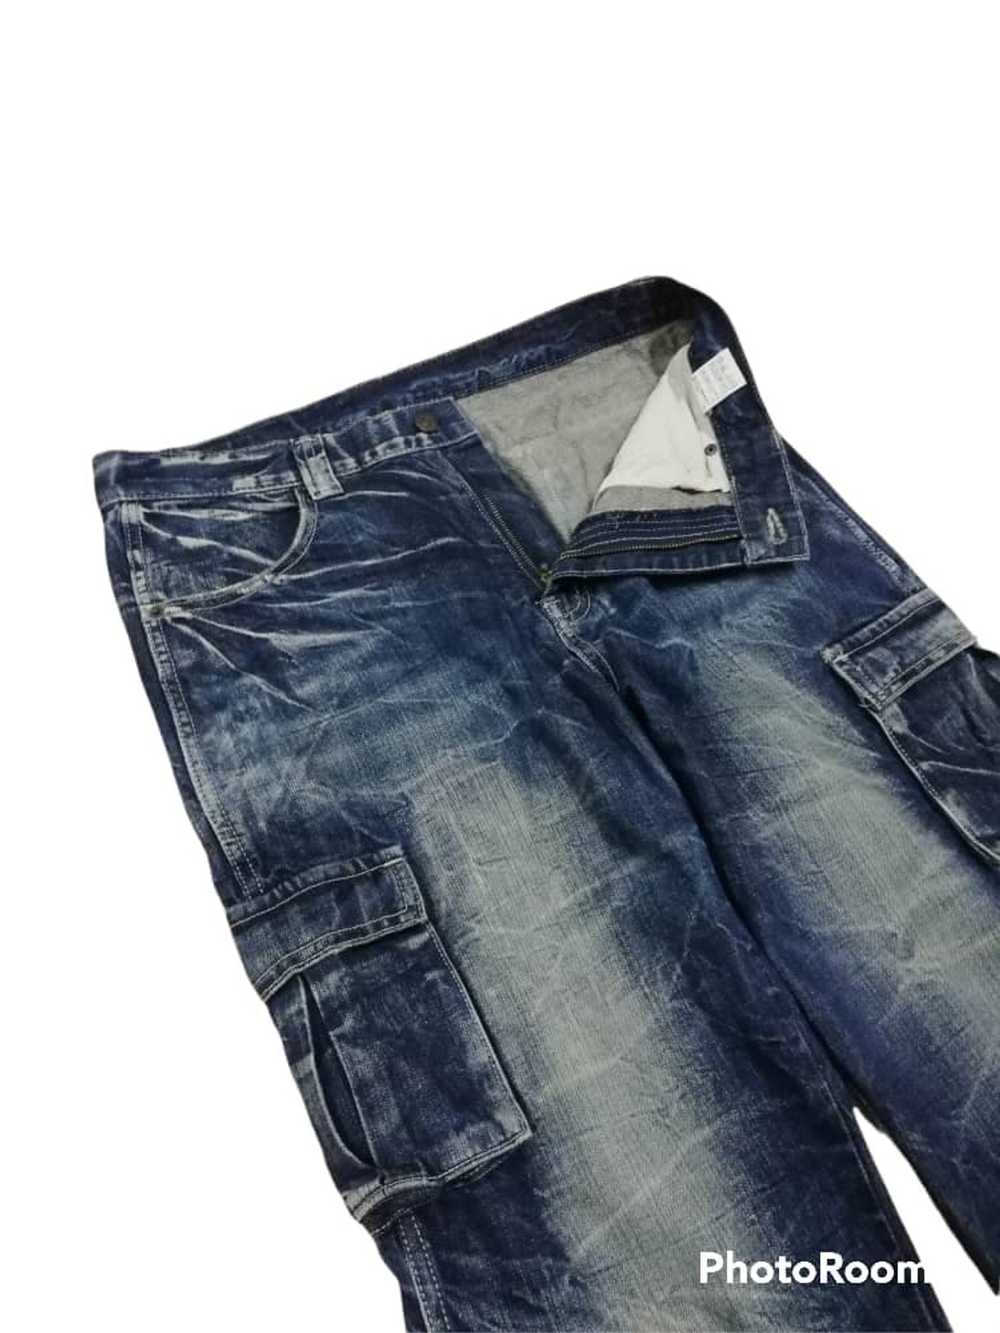 Vintage Flare Jeans Y2K Reworked Painted Pants in Black